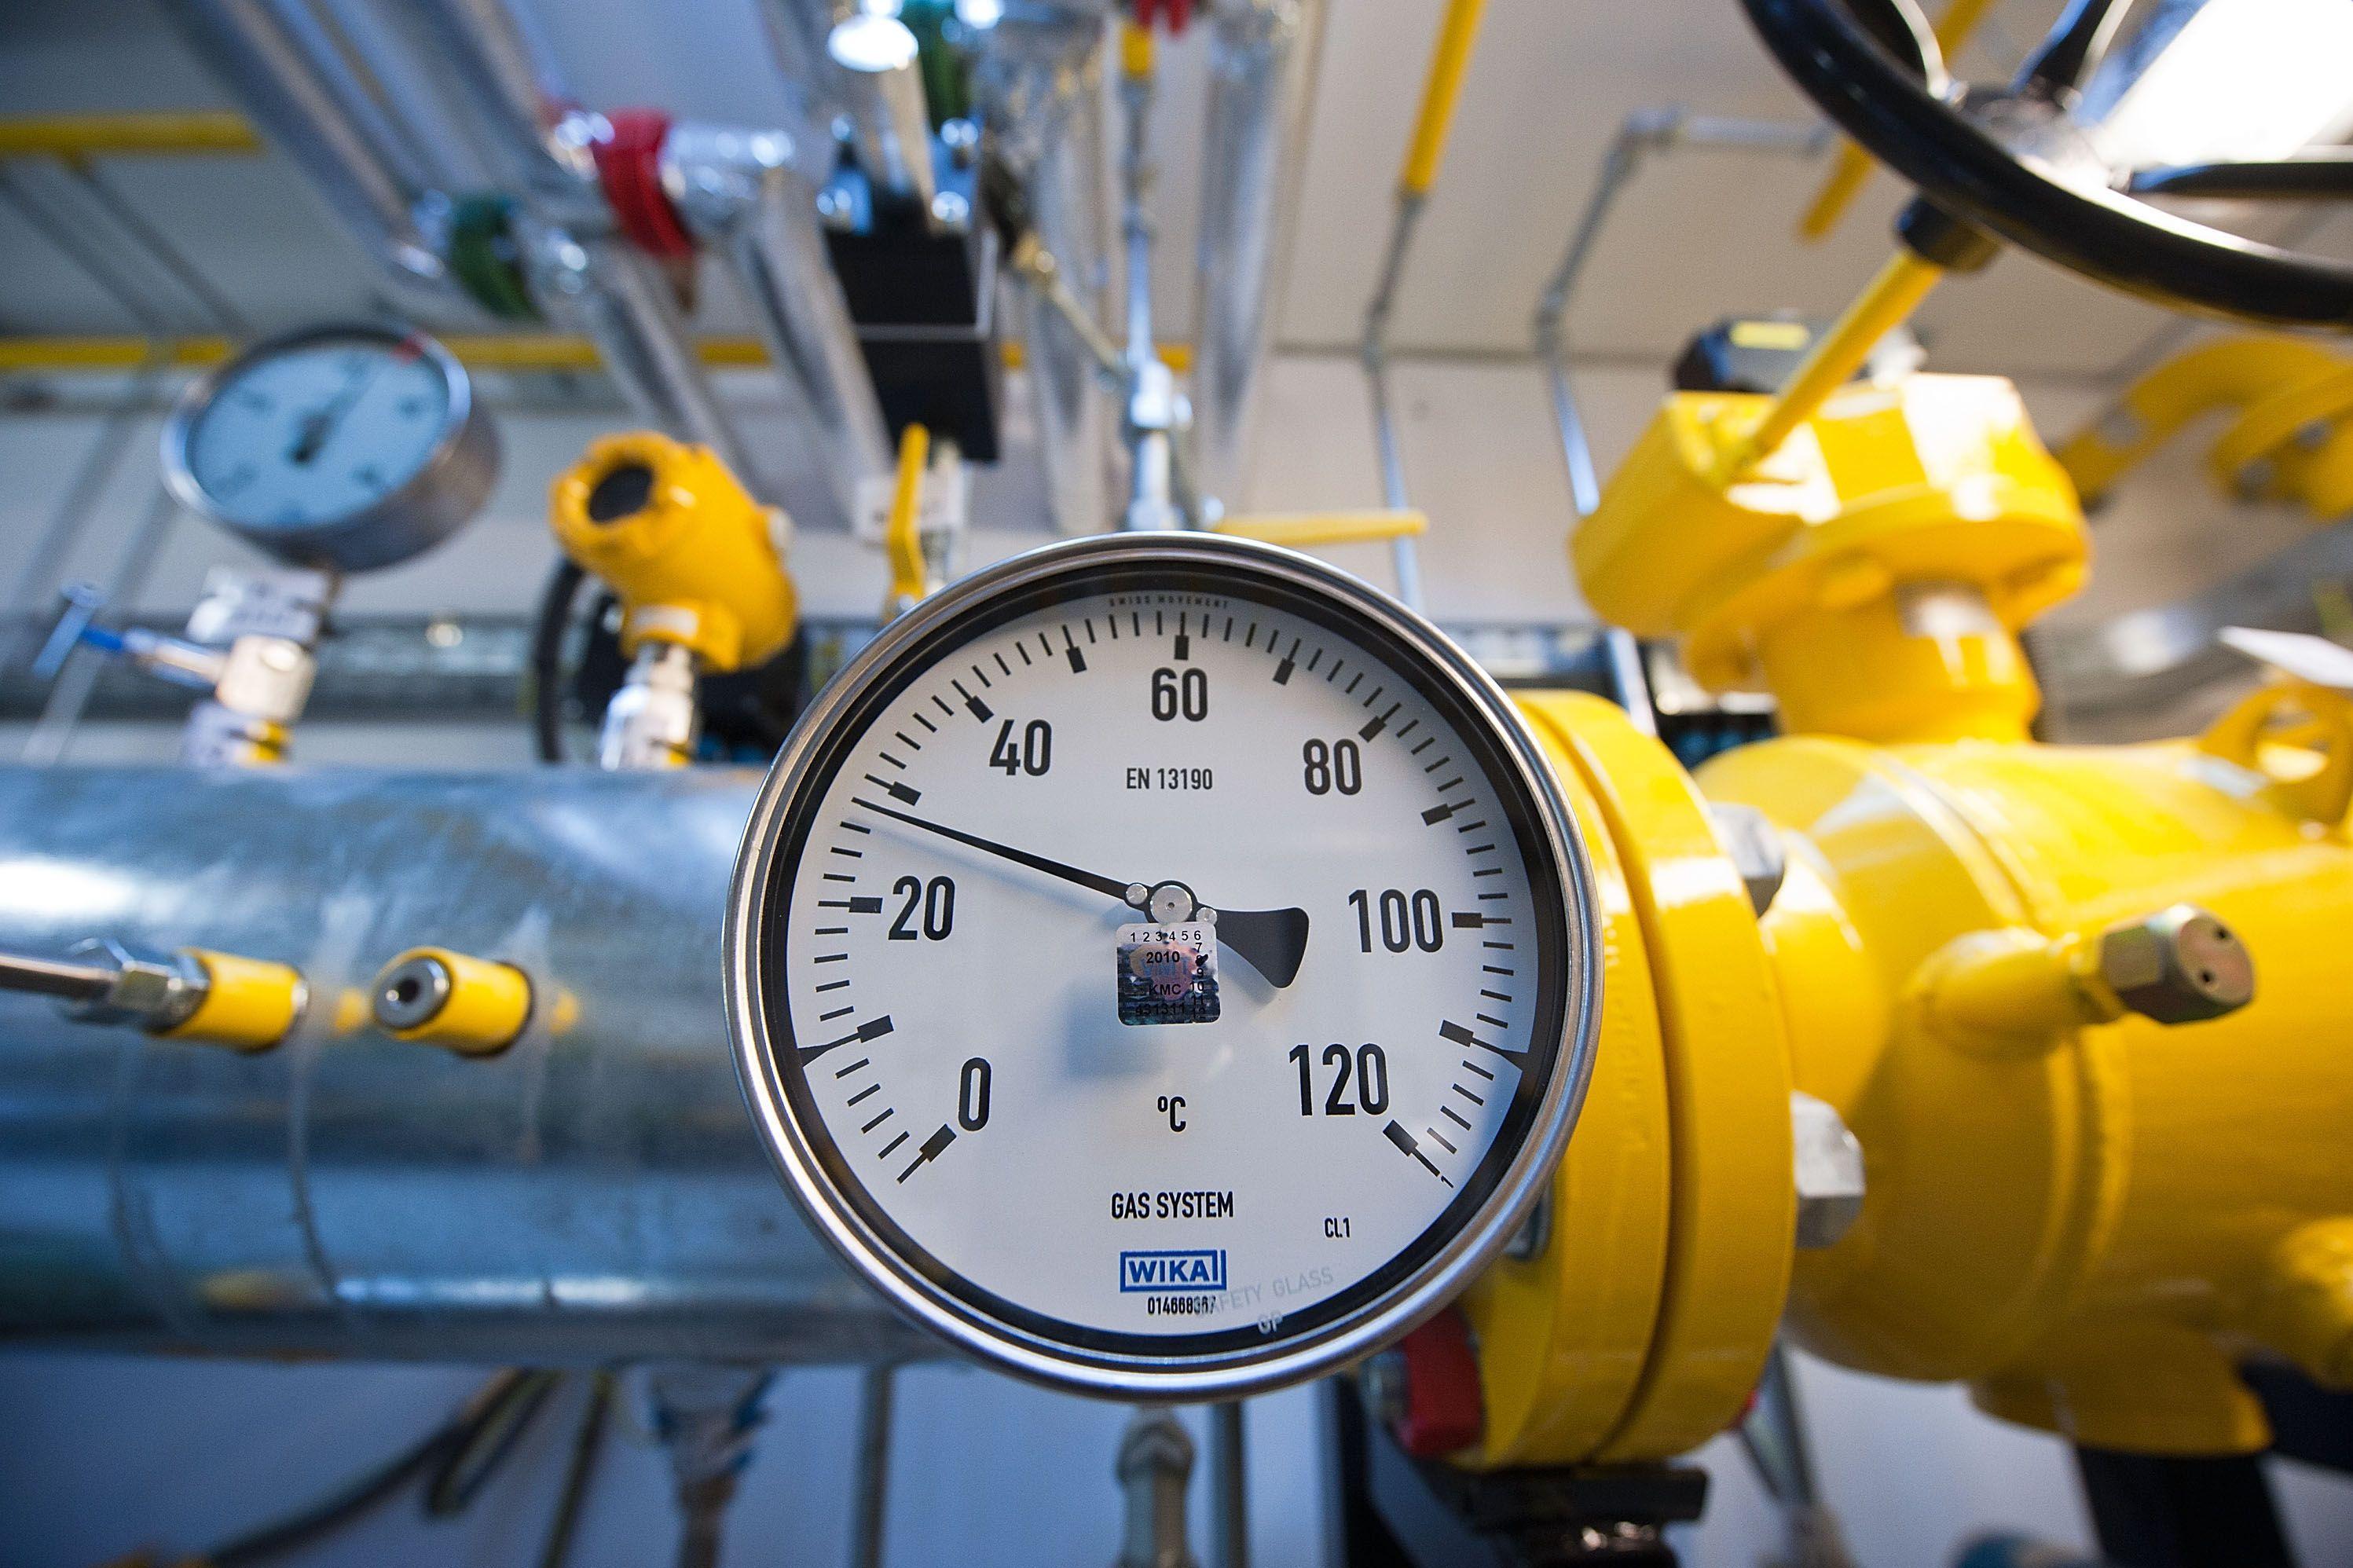 Цена энергонезависимости. Украина стоит на пороге передела газовой отрасли